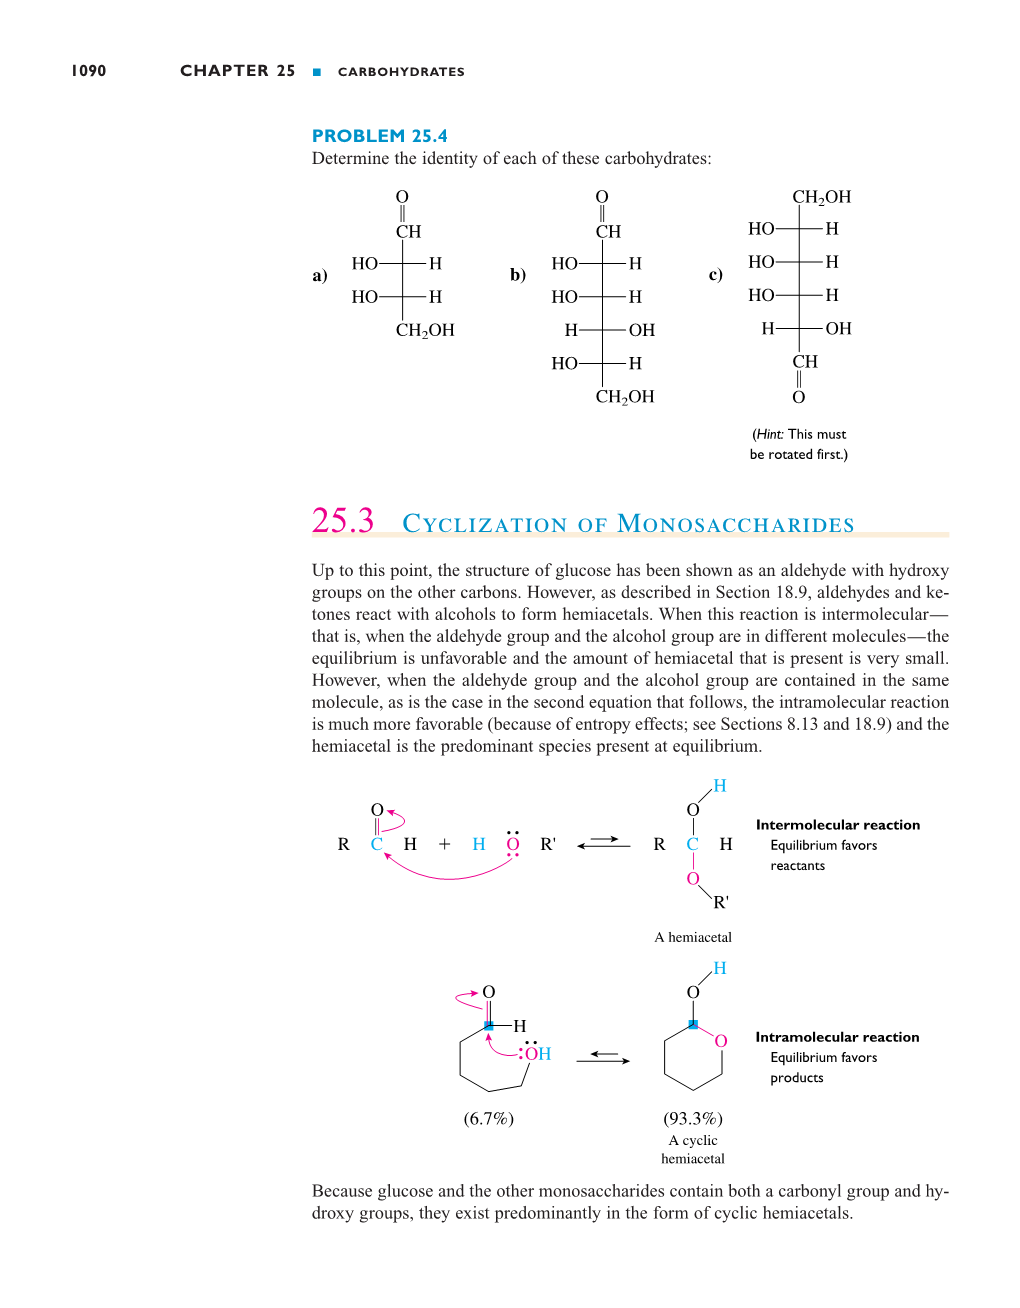 25.3 Cyclization of Monosaccharides